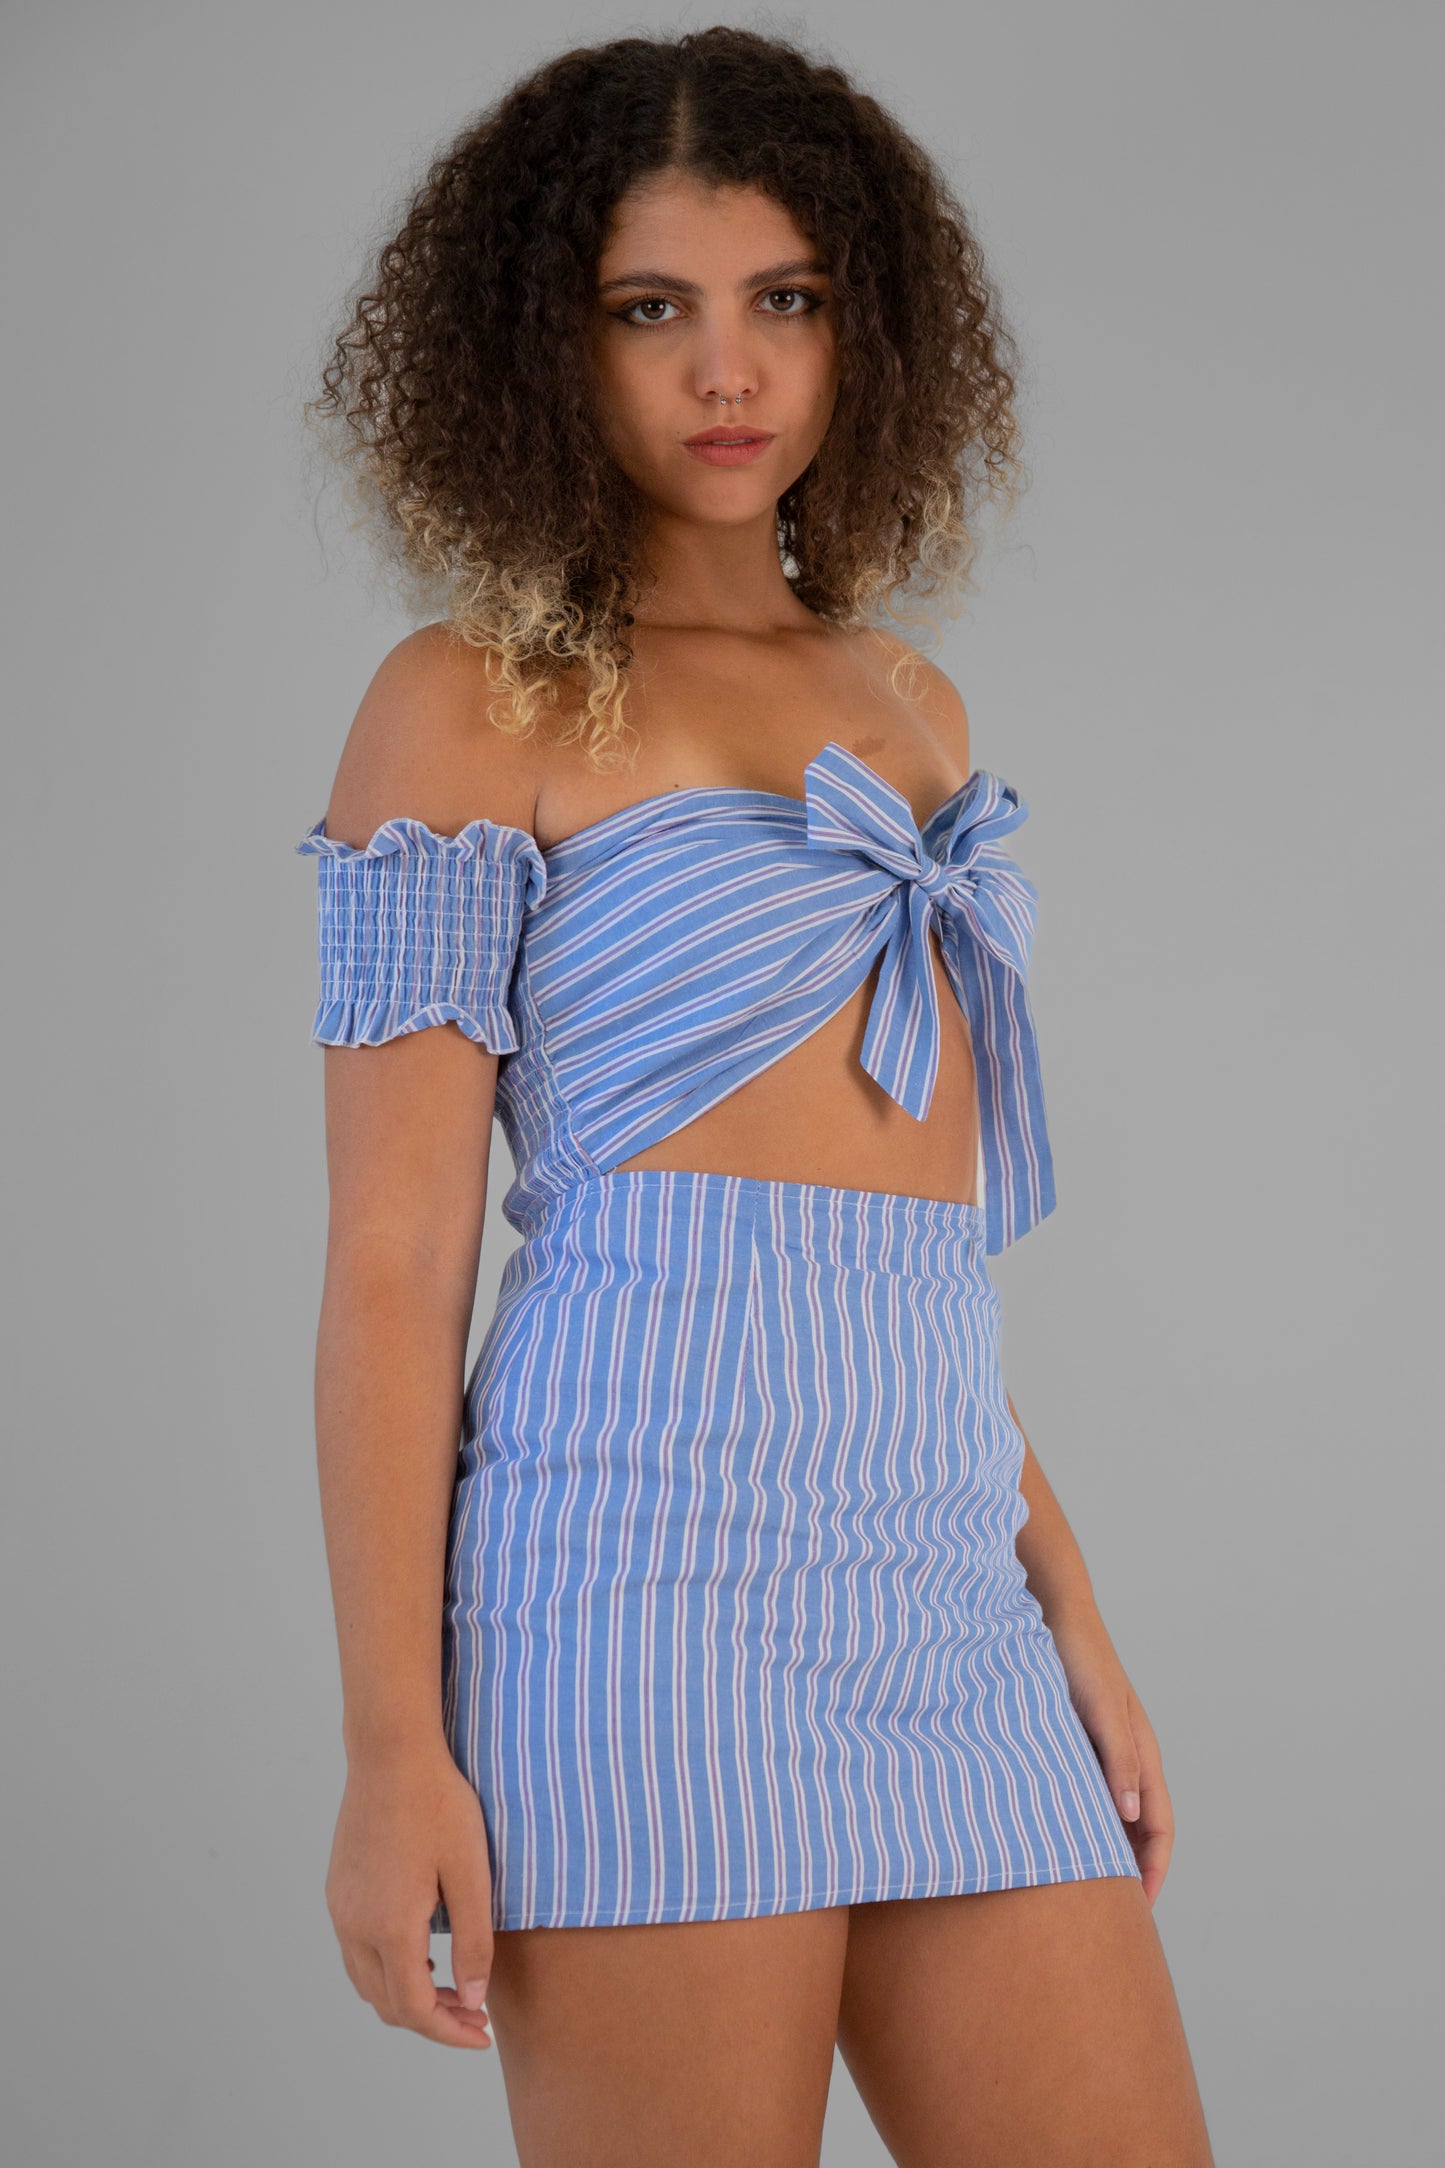 Super Down "Tailored" Mini Dress in Nautical Stripe - Small